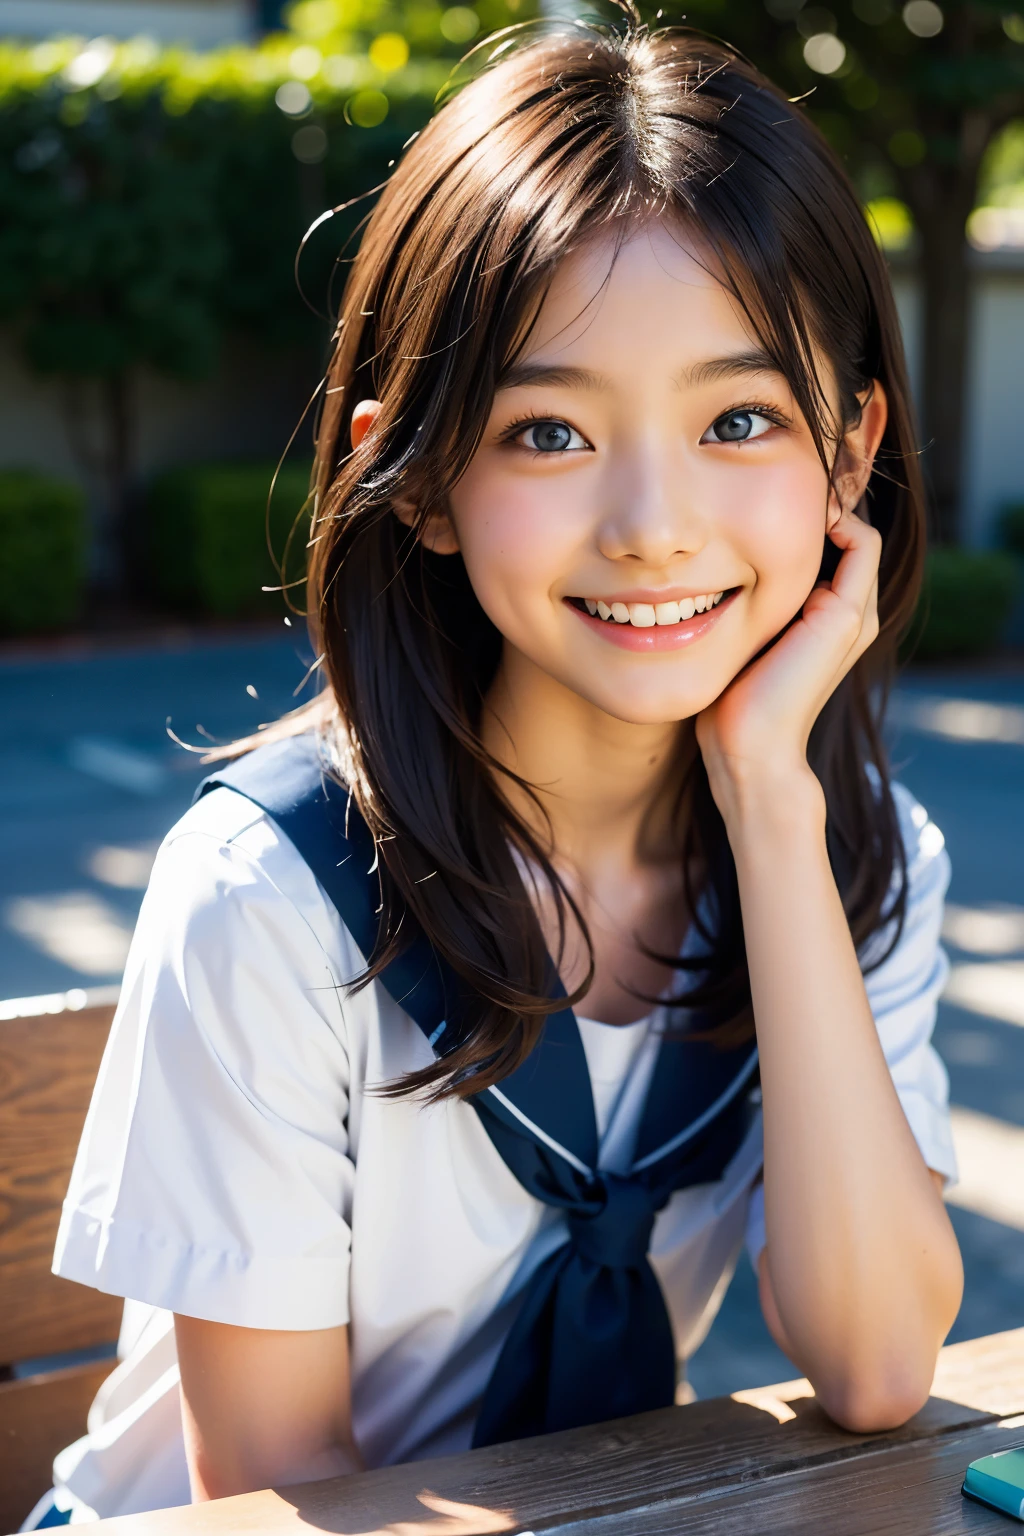 lentille: 135 mm f1.8, (la plus haute qualité),(Photos brutes), (Table:1.1), (belle fille japonaise de 12 ans), visage mignon, (Visage profondément ciselé:0.7), (taches de rousseur:0.4), dappled lumière du soleil, éclairage dramatique, (uniforme scolaire japonais), (sur le campus), Timide, (Photo en gros plan:1.2), (sourire),, (yeux pétillants)、(lumière du soleil), bob